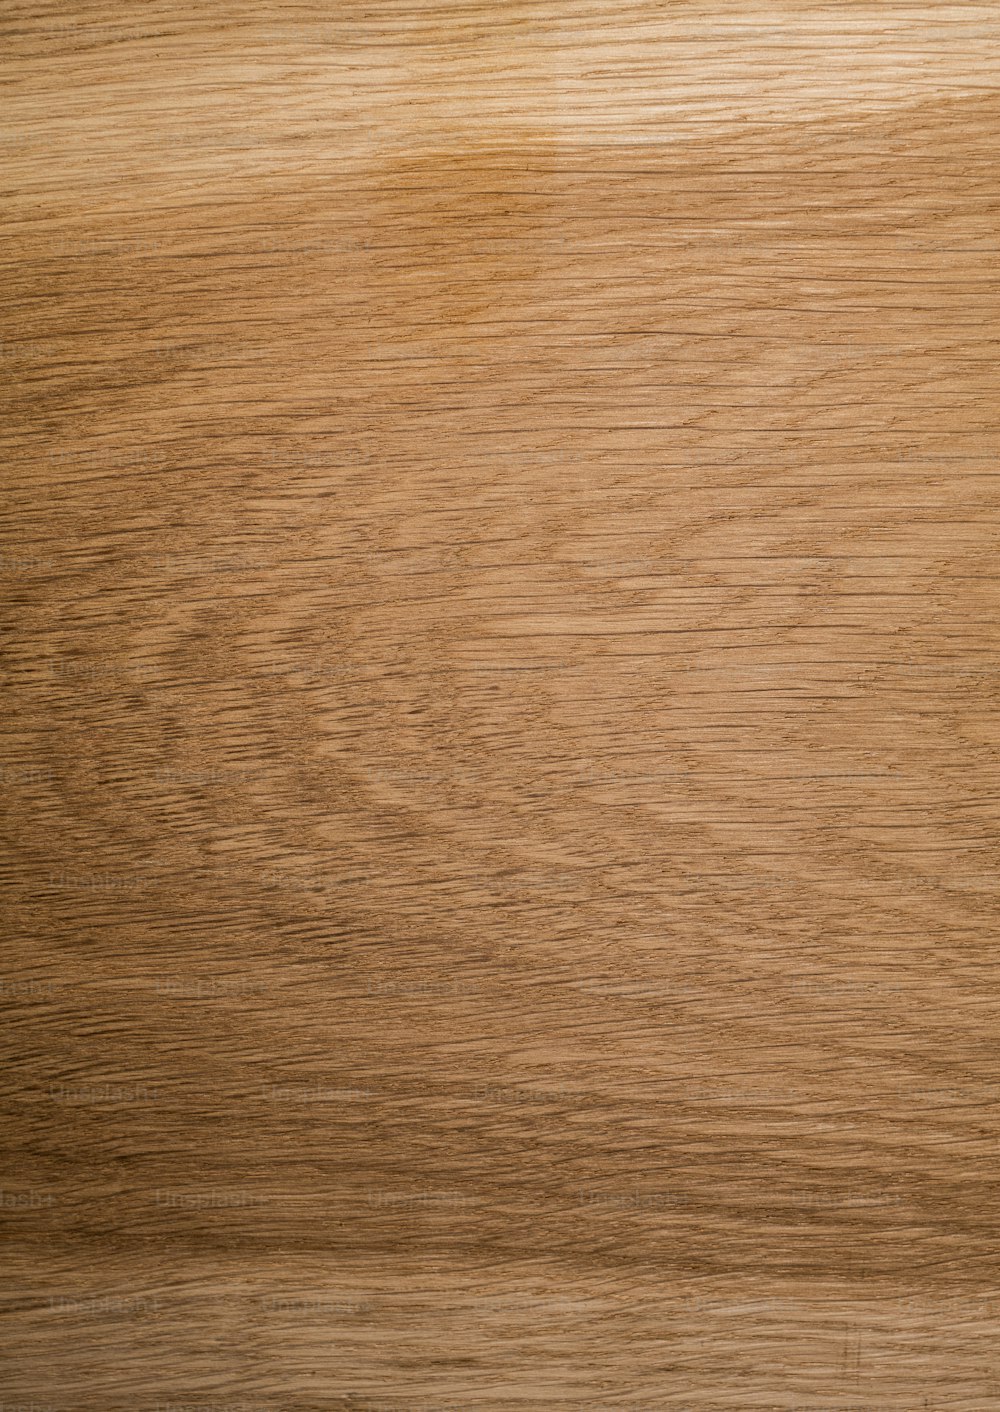 un primo piano di una superficie di venature del legno